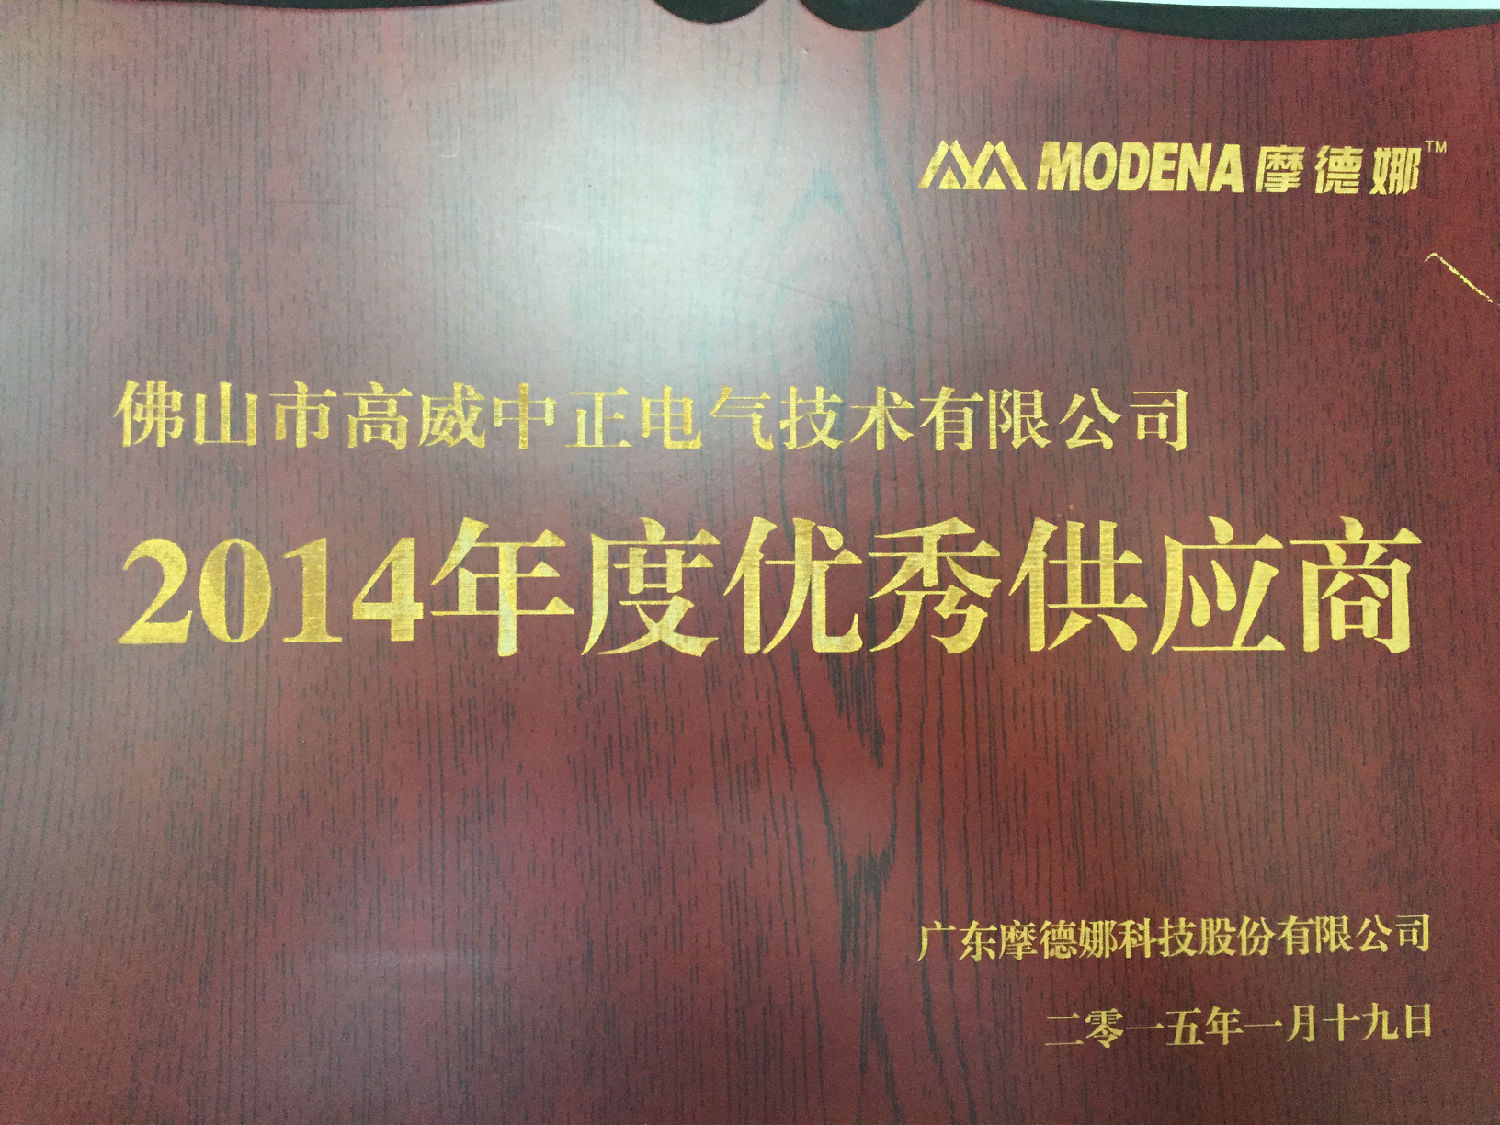 摩德纳颁发给高威中正2014年度优秀供应商奖